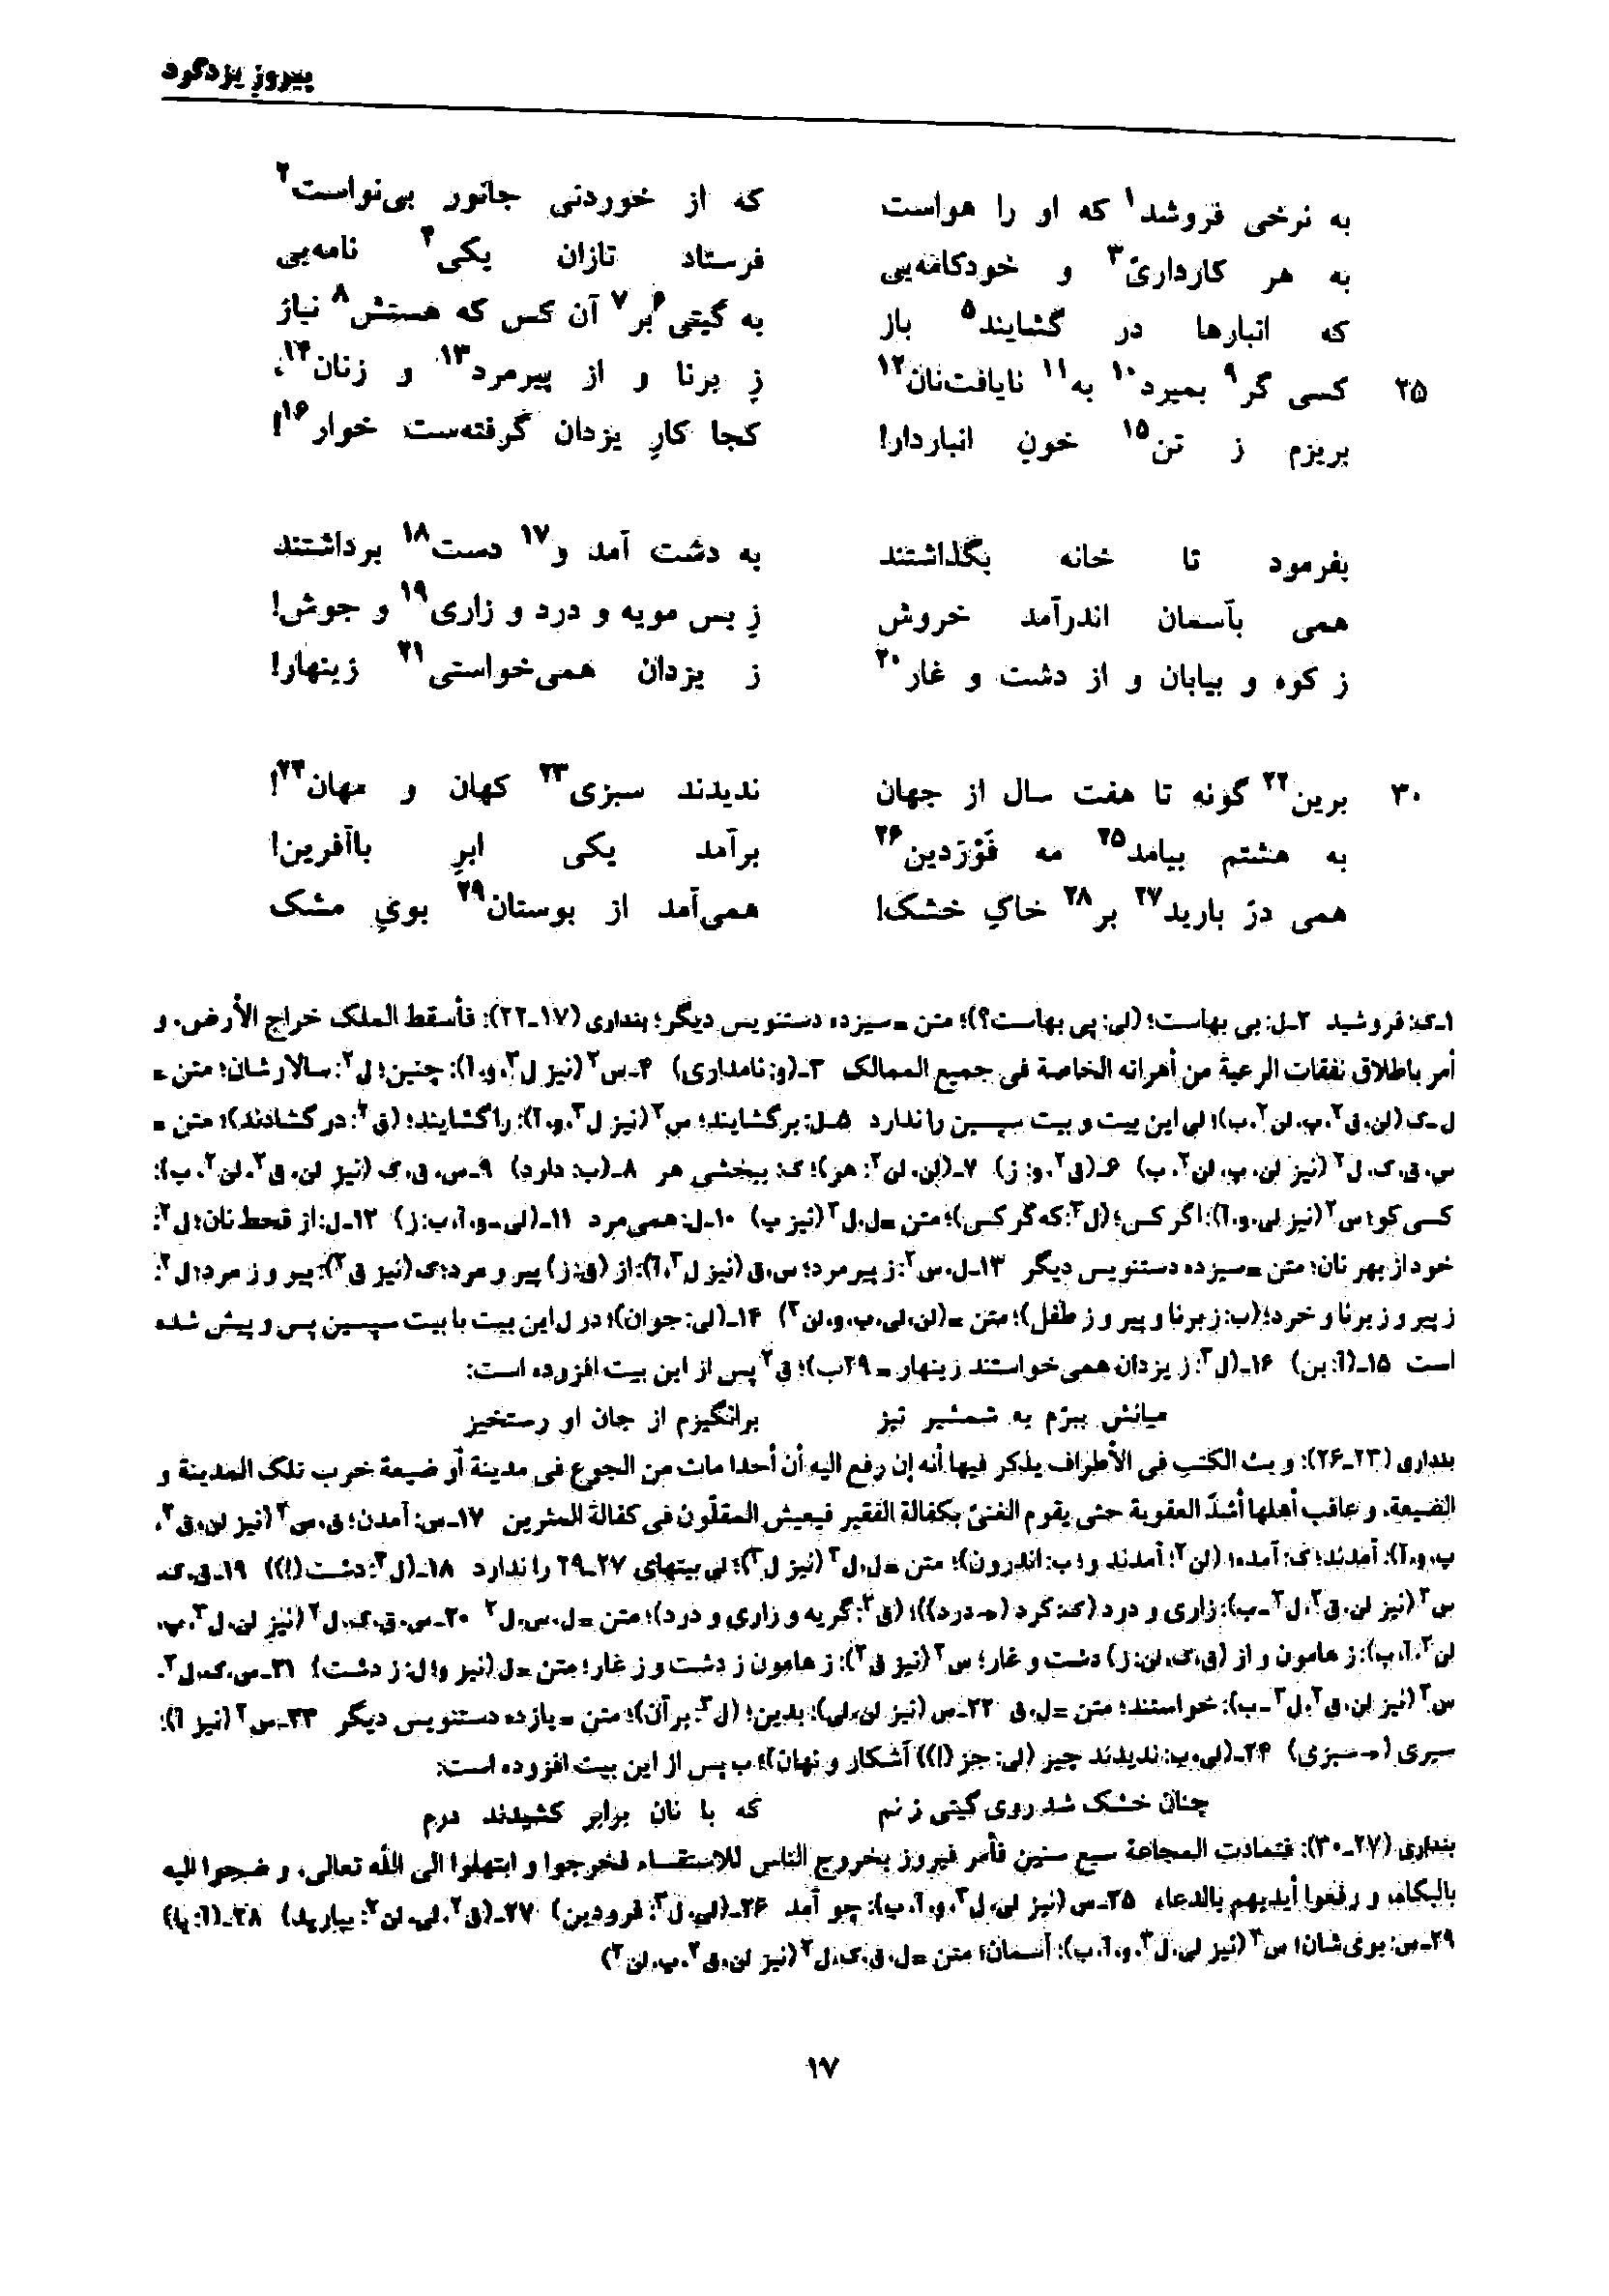 vol. 7, p. 17